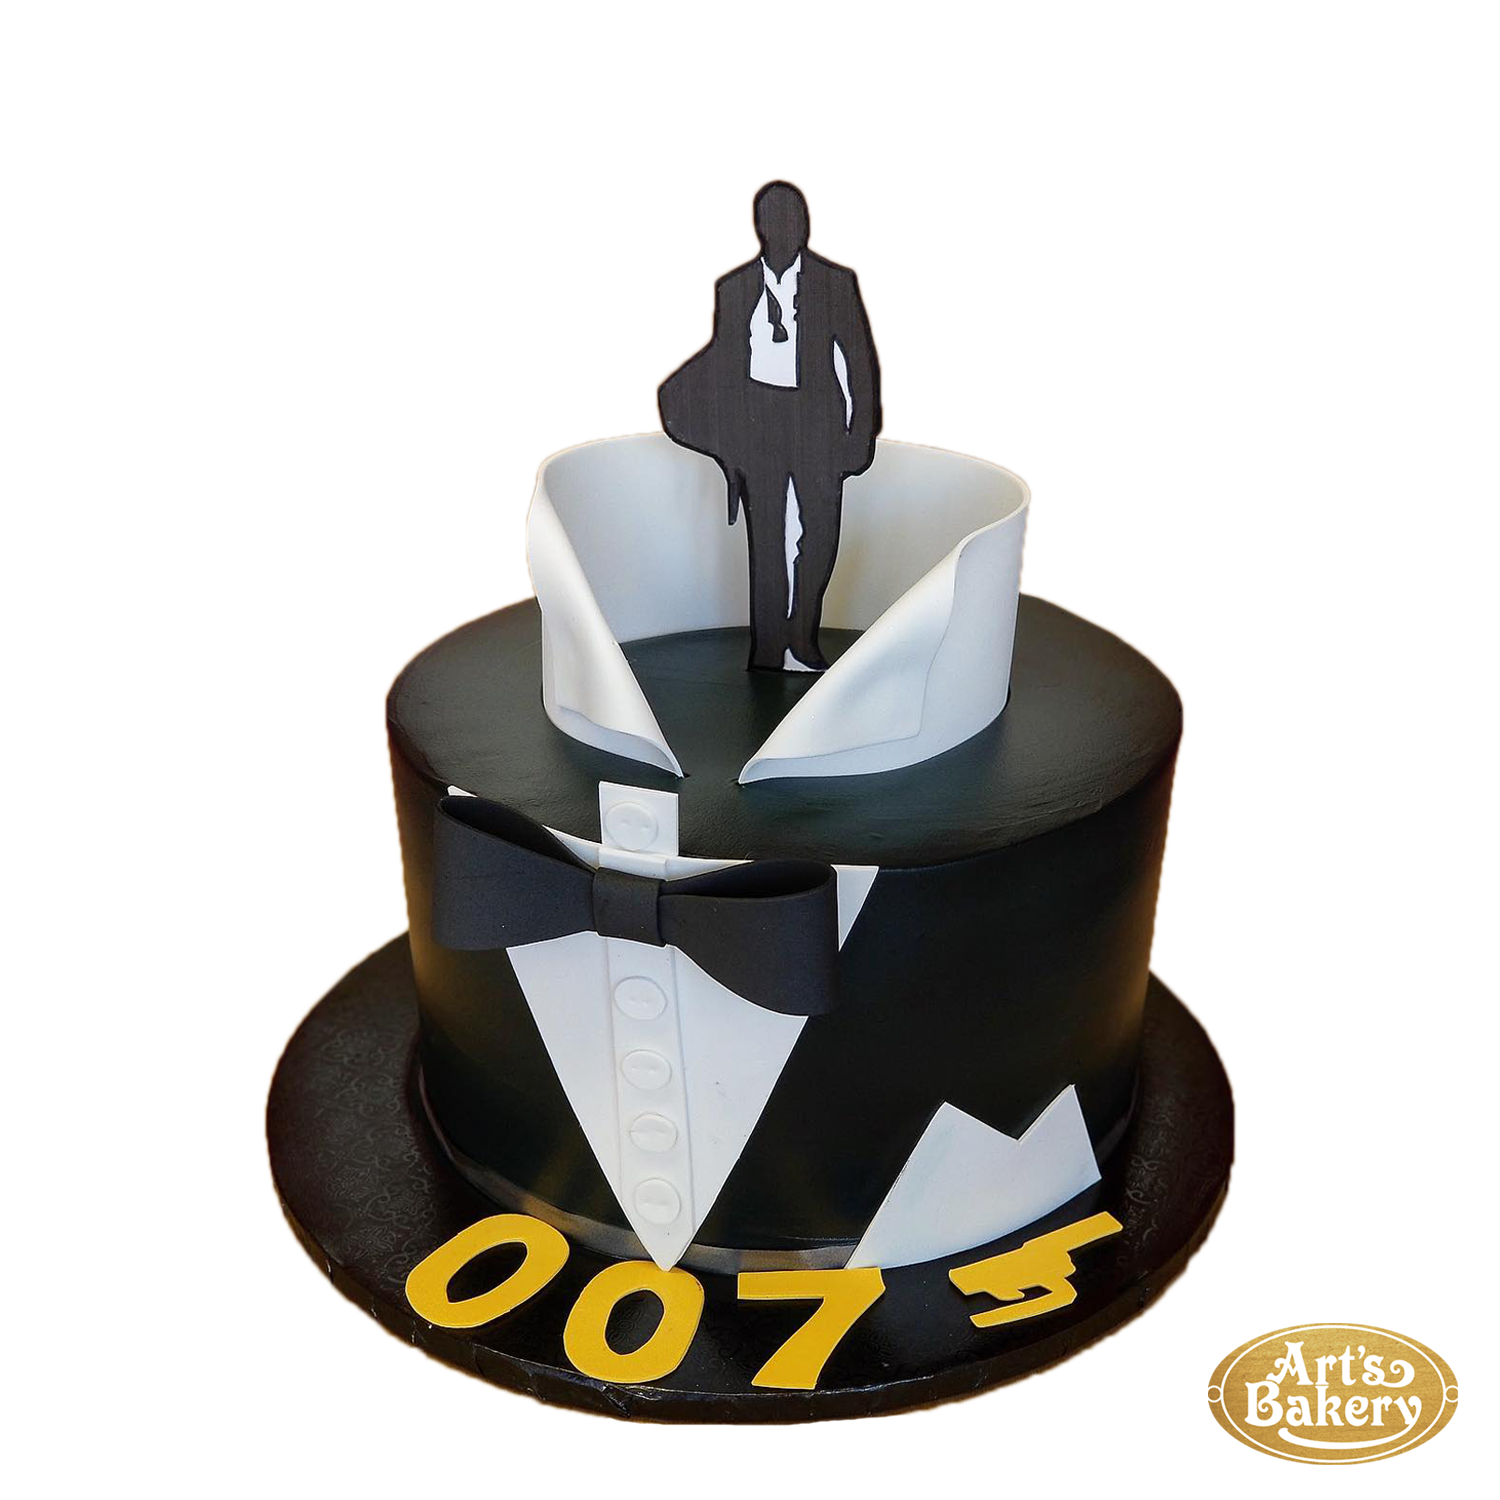 James Bond 007 theme birthday cake 50th - YouTube